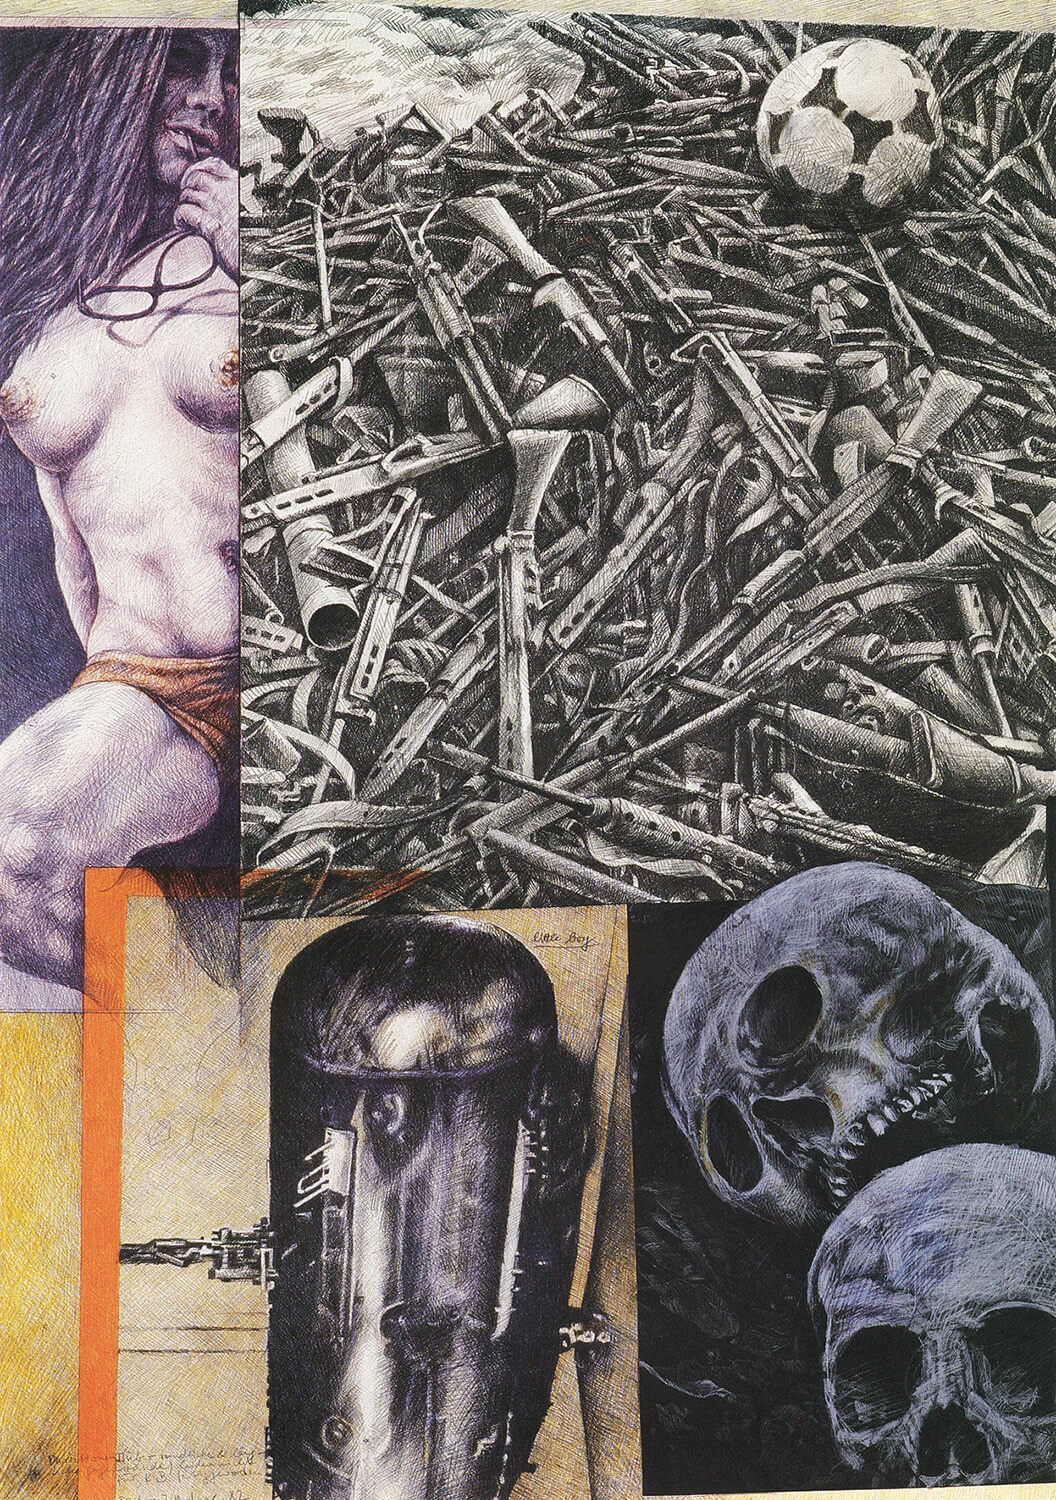 Peter Sorge, Variationen (über rundliche und längliche Gegenstände), 1982, Blei- und Farbstift auf Karton, 90 x 70 cm (Diptychon, linke Seite)